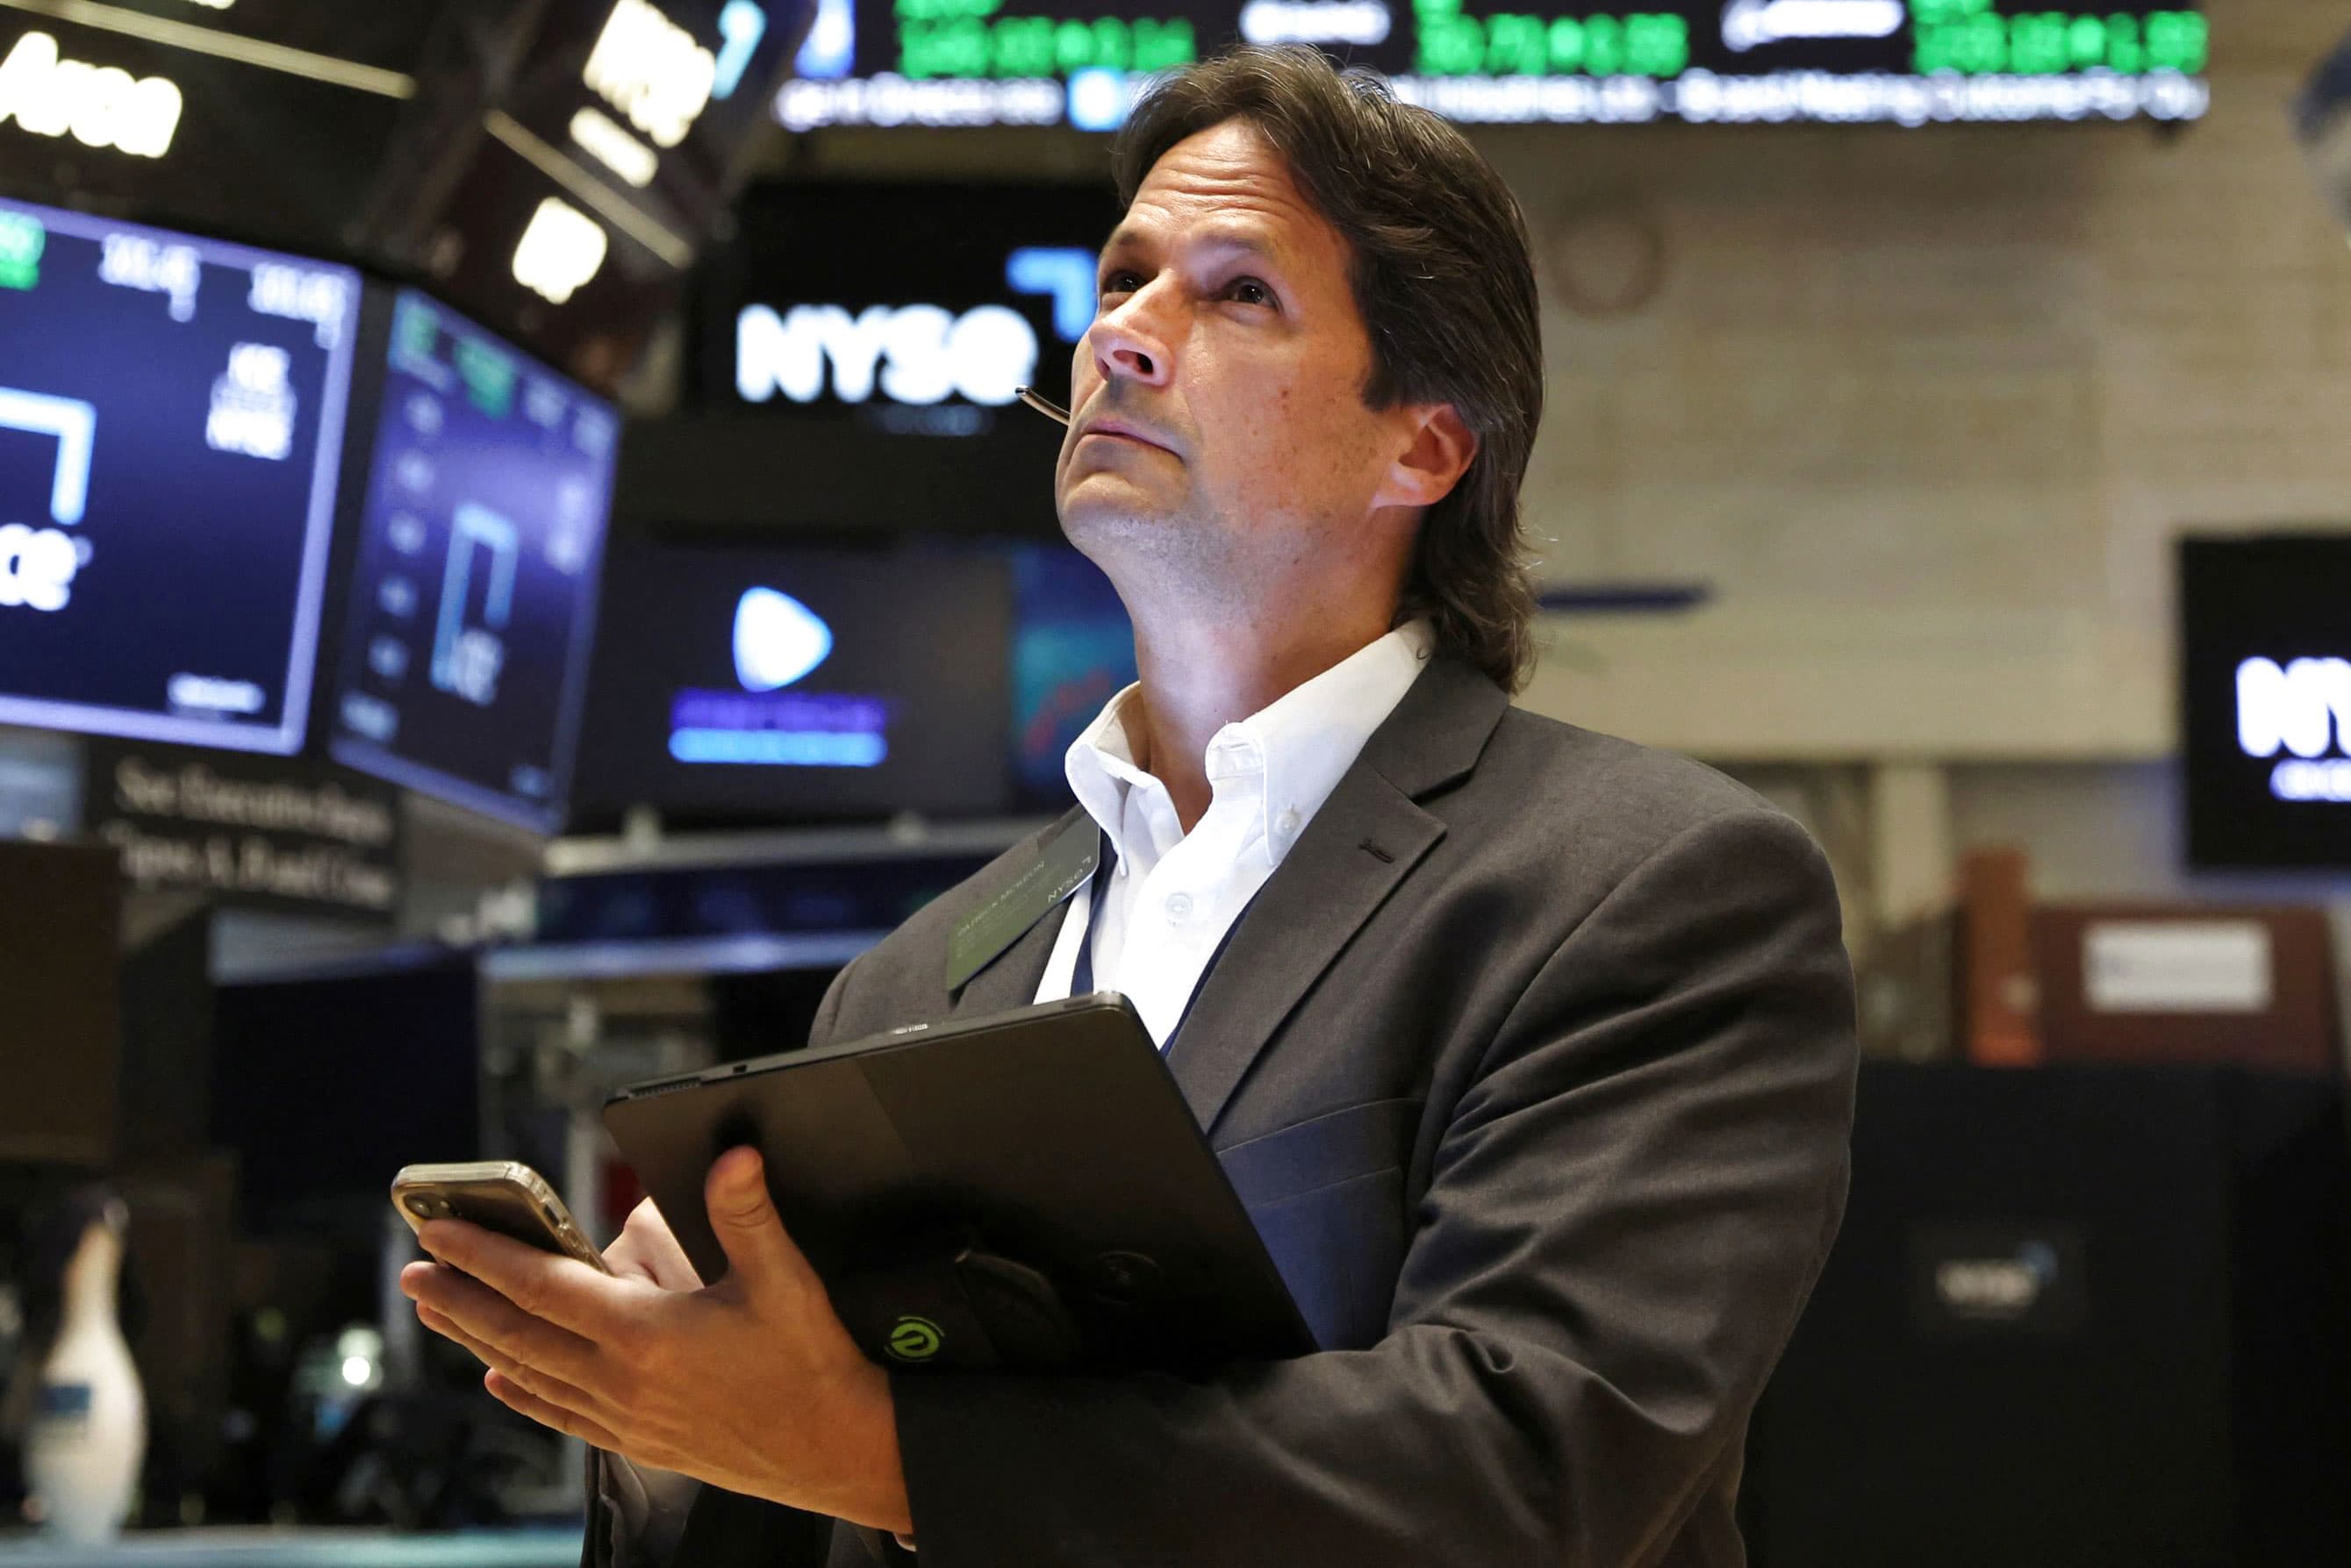 Aktien-Futures fallen, da die Wall Street eine arbeitsreiche Gewinnwoche erwartet: Live-Updates